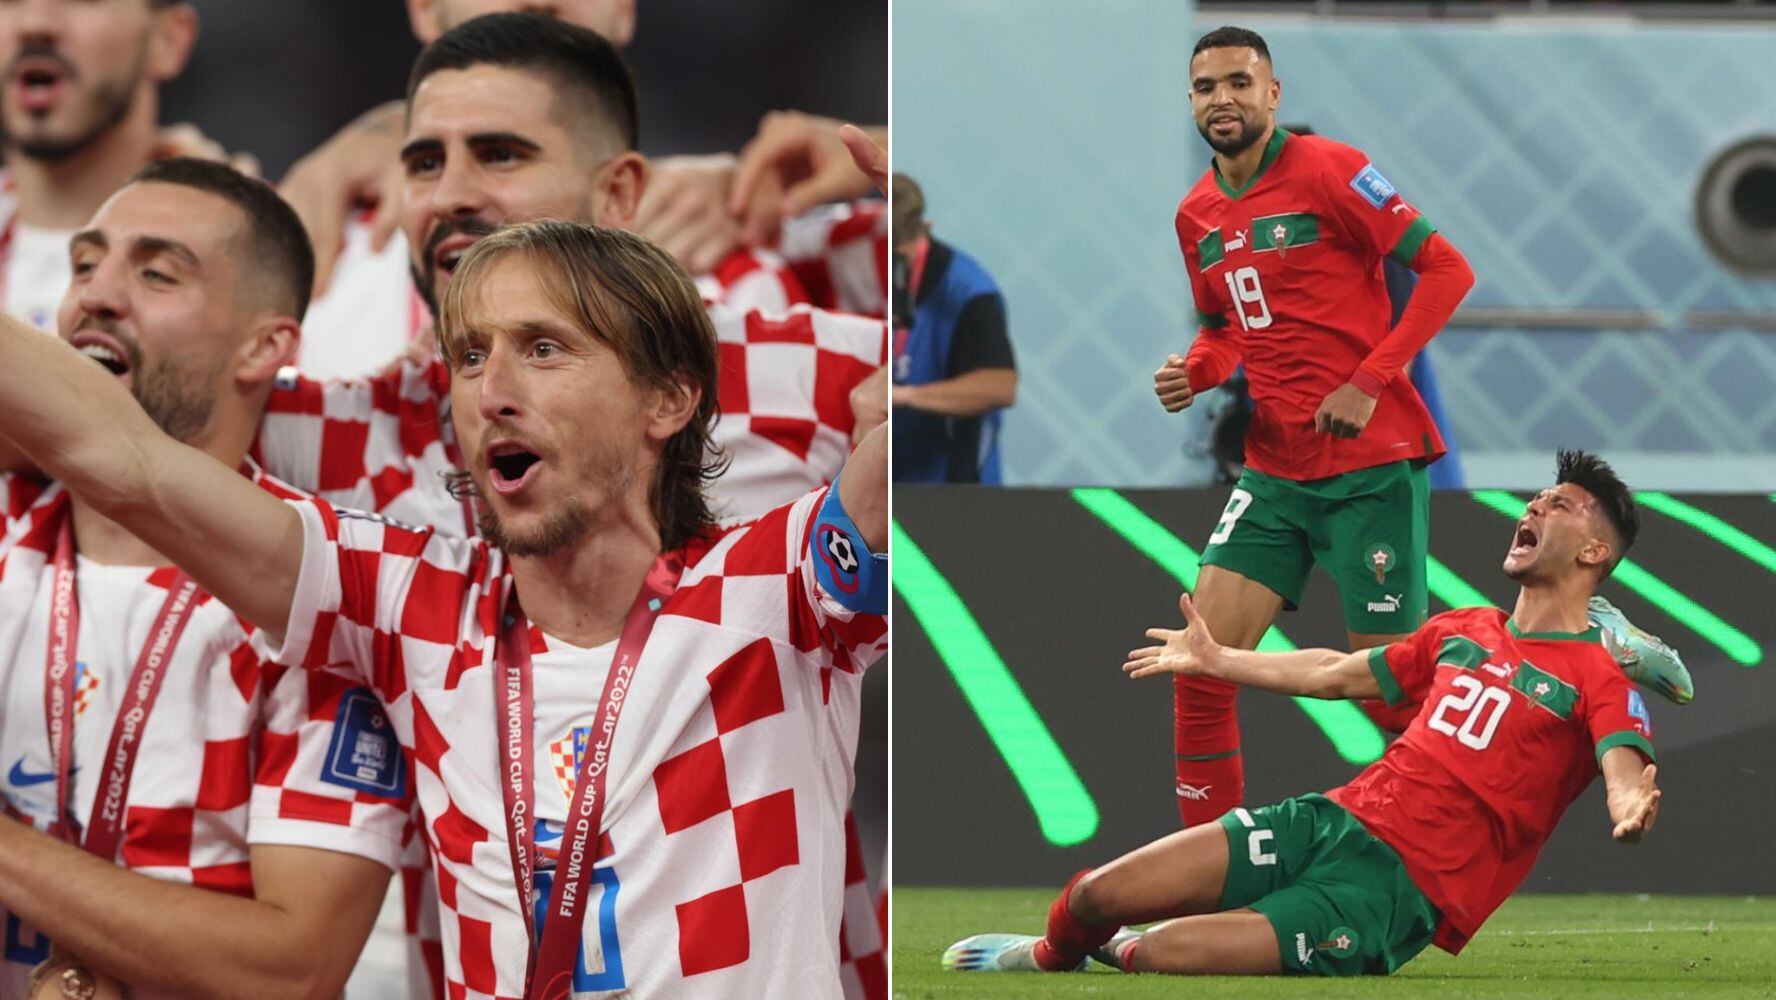 Cuánto se ‘embolsarán’ Croacia y Marruecos por el 3er. y 4to. lugar en el Mundial de Qatar